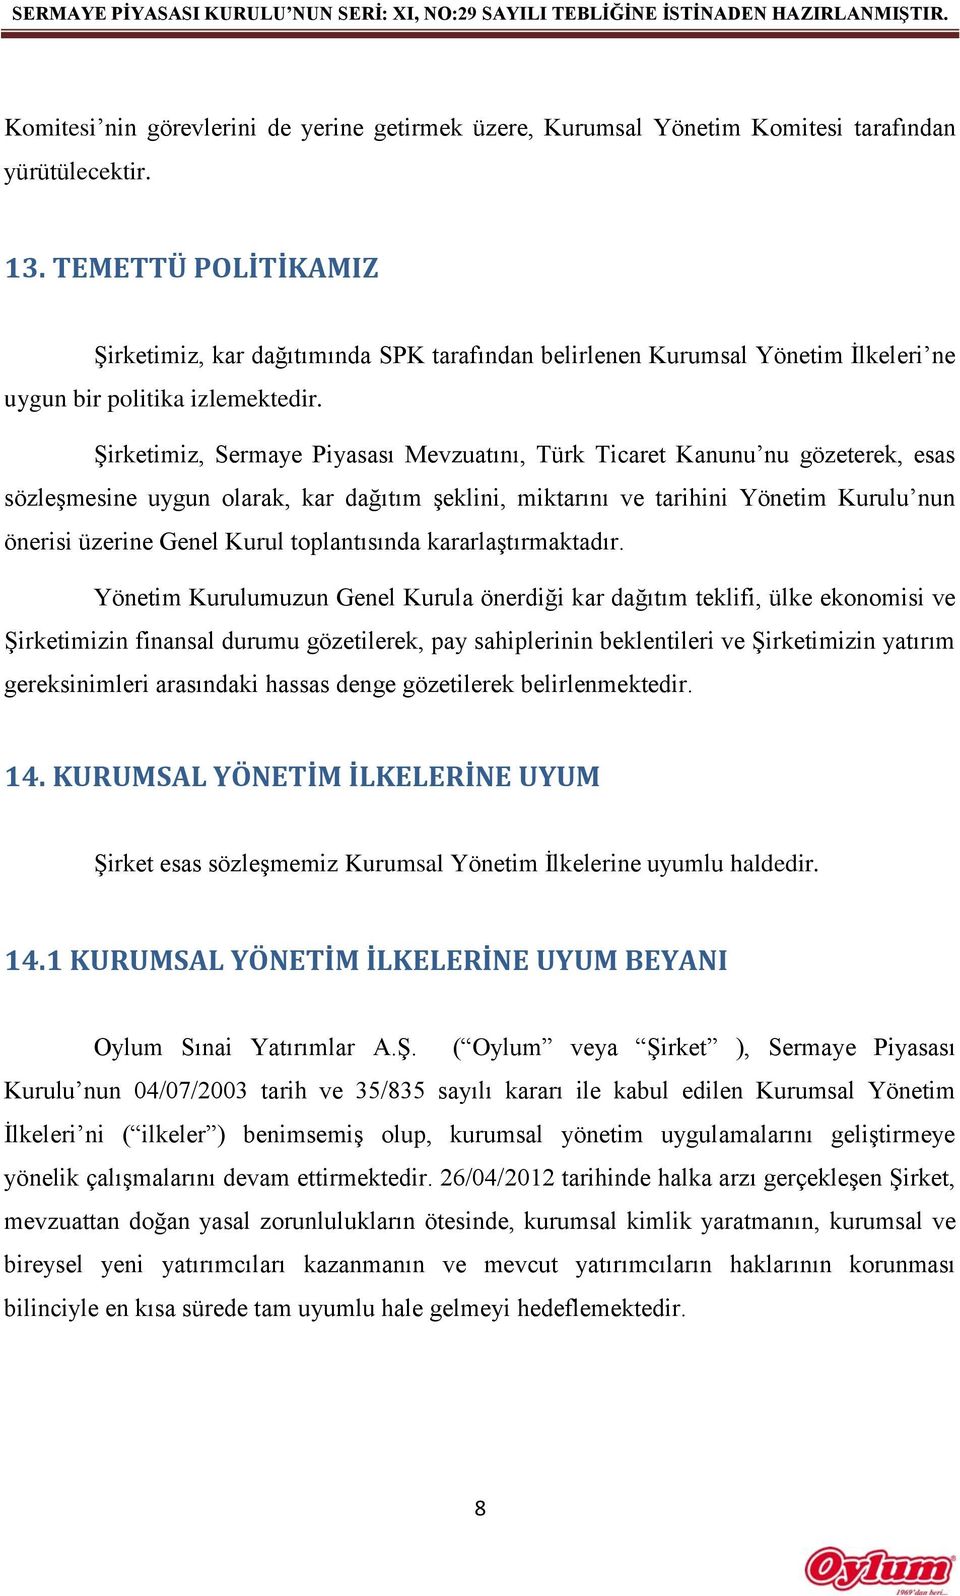 Şirketimiz, Sermaye Piyasası Mevzuatını, Türk Ticaret Kanunu nu gözeterek, esas sözleşmesine uygun olarak, kar dağıtım şeklini, miktarını ve tarihini Yönetim Kurulu nun önerisi üzerine Genel Kurul